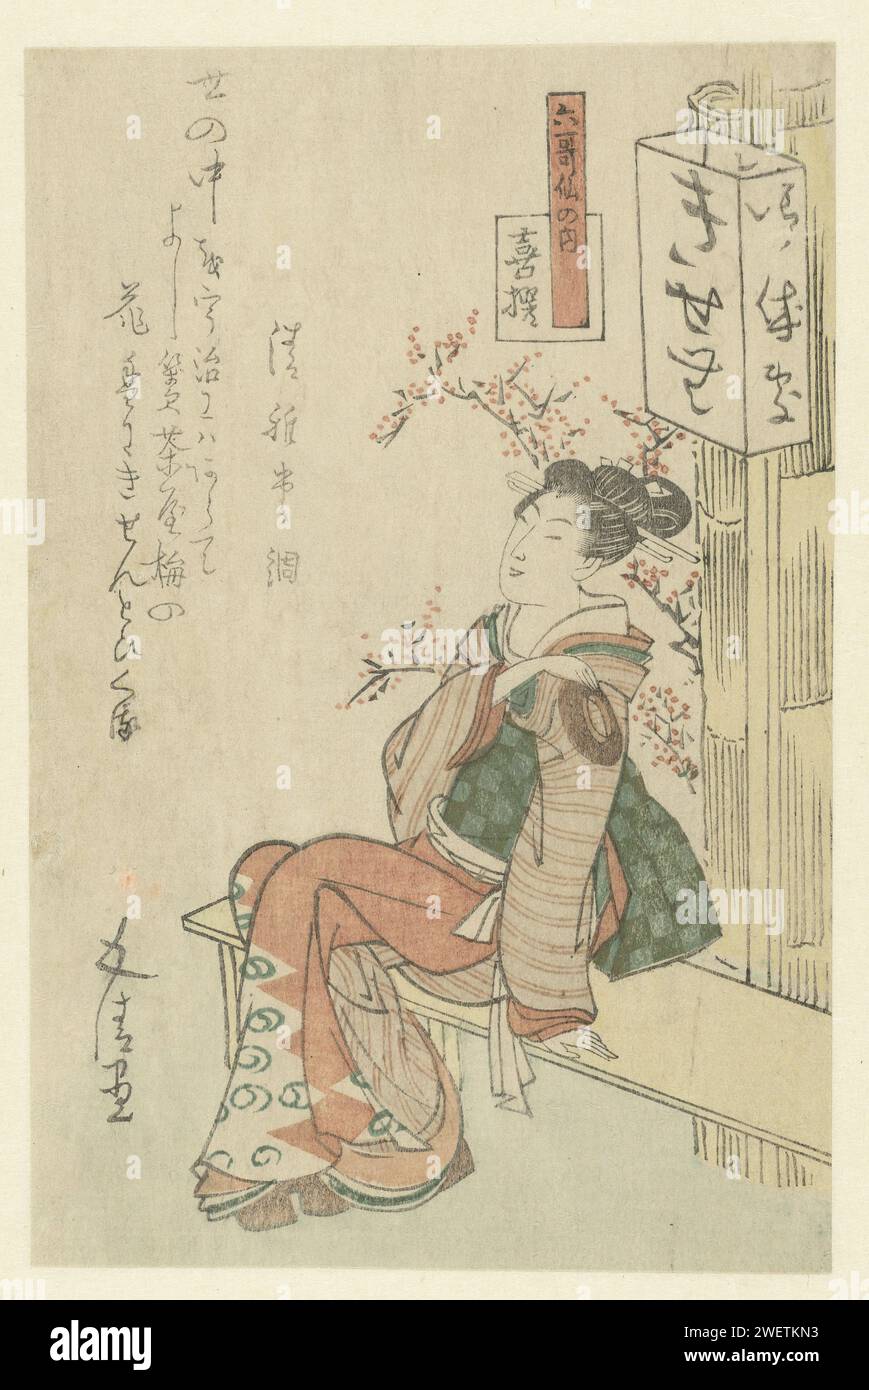 Teehaus-Kellnerin sitzt auf einer Bank, ca. 1815 - ca. 1820 Drucken Eine Kellnerin sitzt auf einer Bank vor einem Teehaus, auf dem der Name Kisen steht, der Name eines berühmten Dichters. Mit einem Gedicht. Der Druck wird von der Lyrikfirma Nogawa veröffentlicht, dessen Emblem auf den Kimono der dargestellten Frau zurückgeht. Japanisches Papier (handgefertigtes Papier) Farbe Holzschnitt Sitzfigur - AA - weibliche menschliche Figur. gasthof, Kaffeehaus, Gasthaus usw. Bank Stockfoto